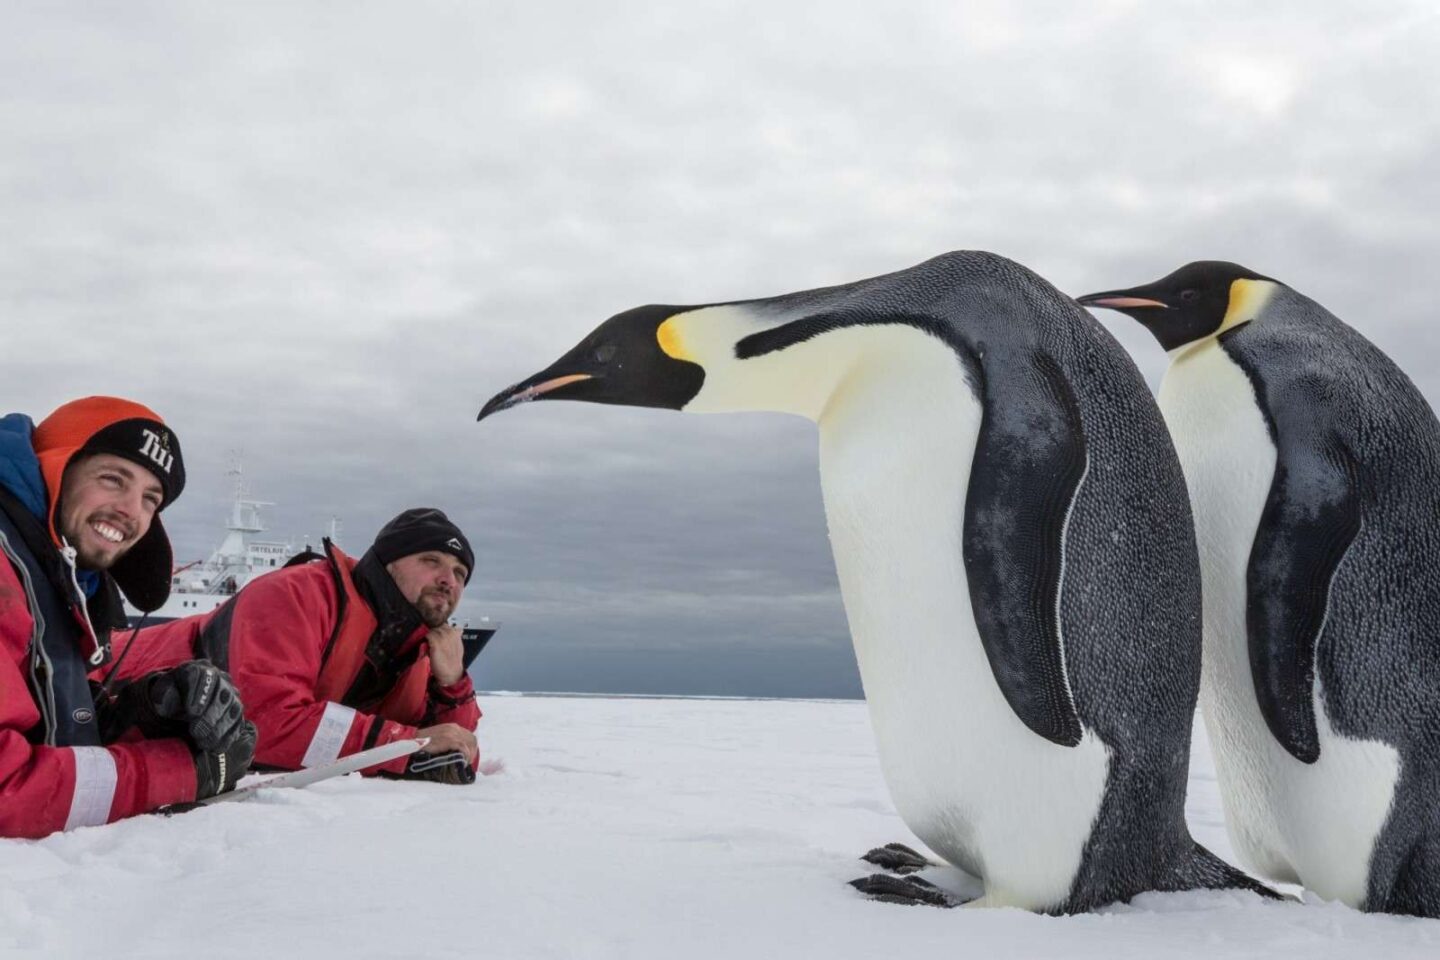 antarctica close encounter with emperor penguins oce